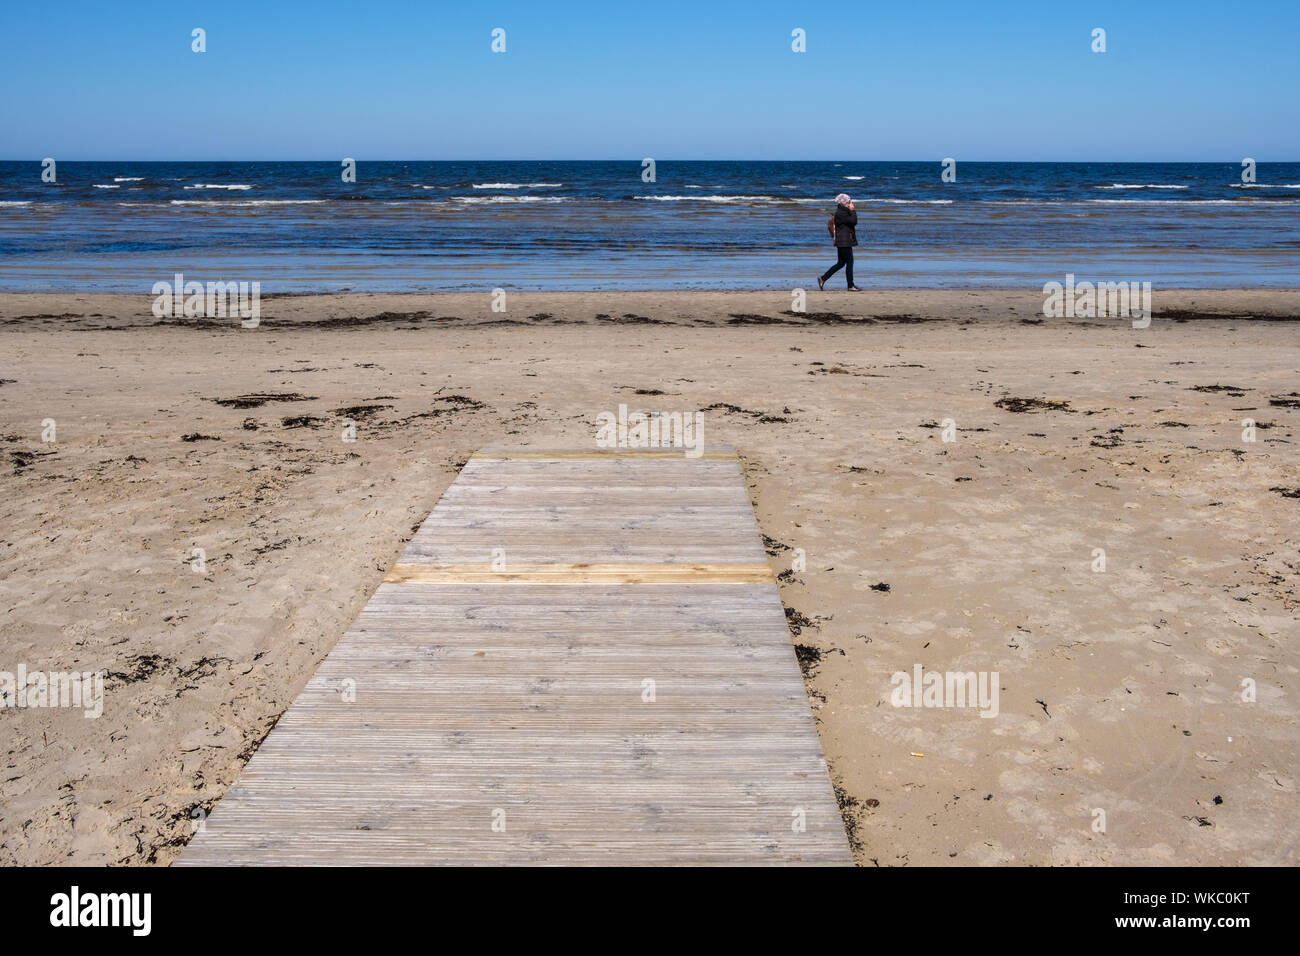 La Lettonia: Jurmala. Walker, donna, sulla spiaggia, in primavera, che si affaccia sul Mar Baltico Foto Stock